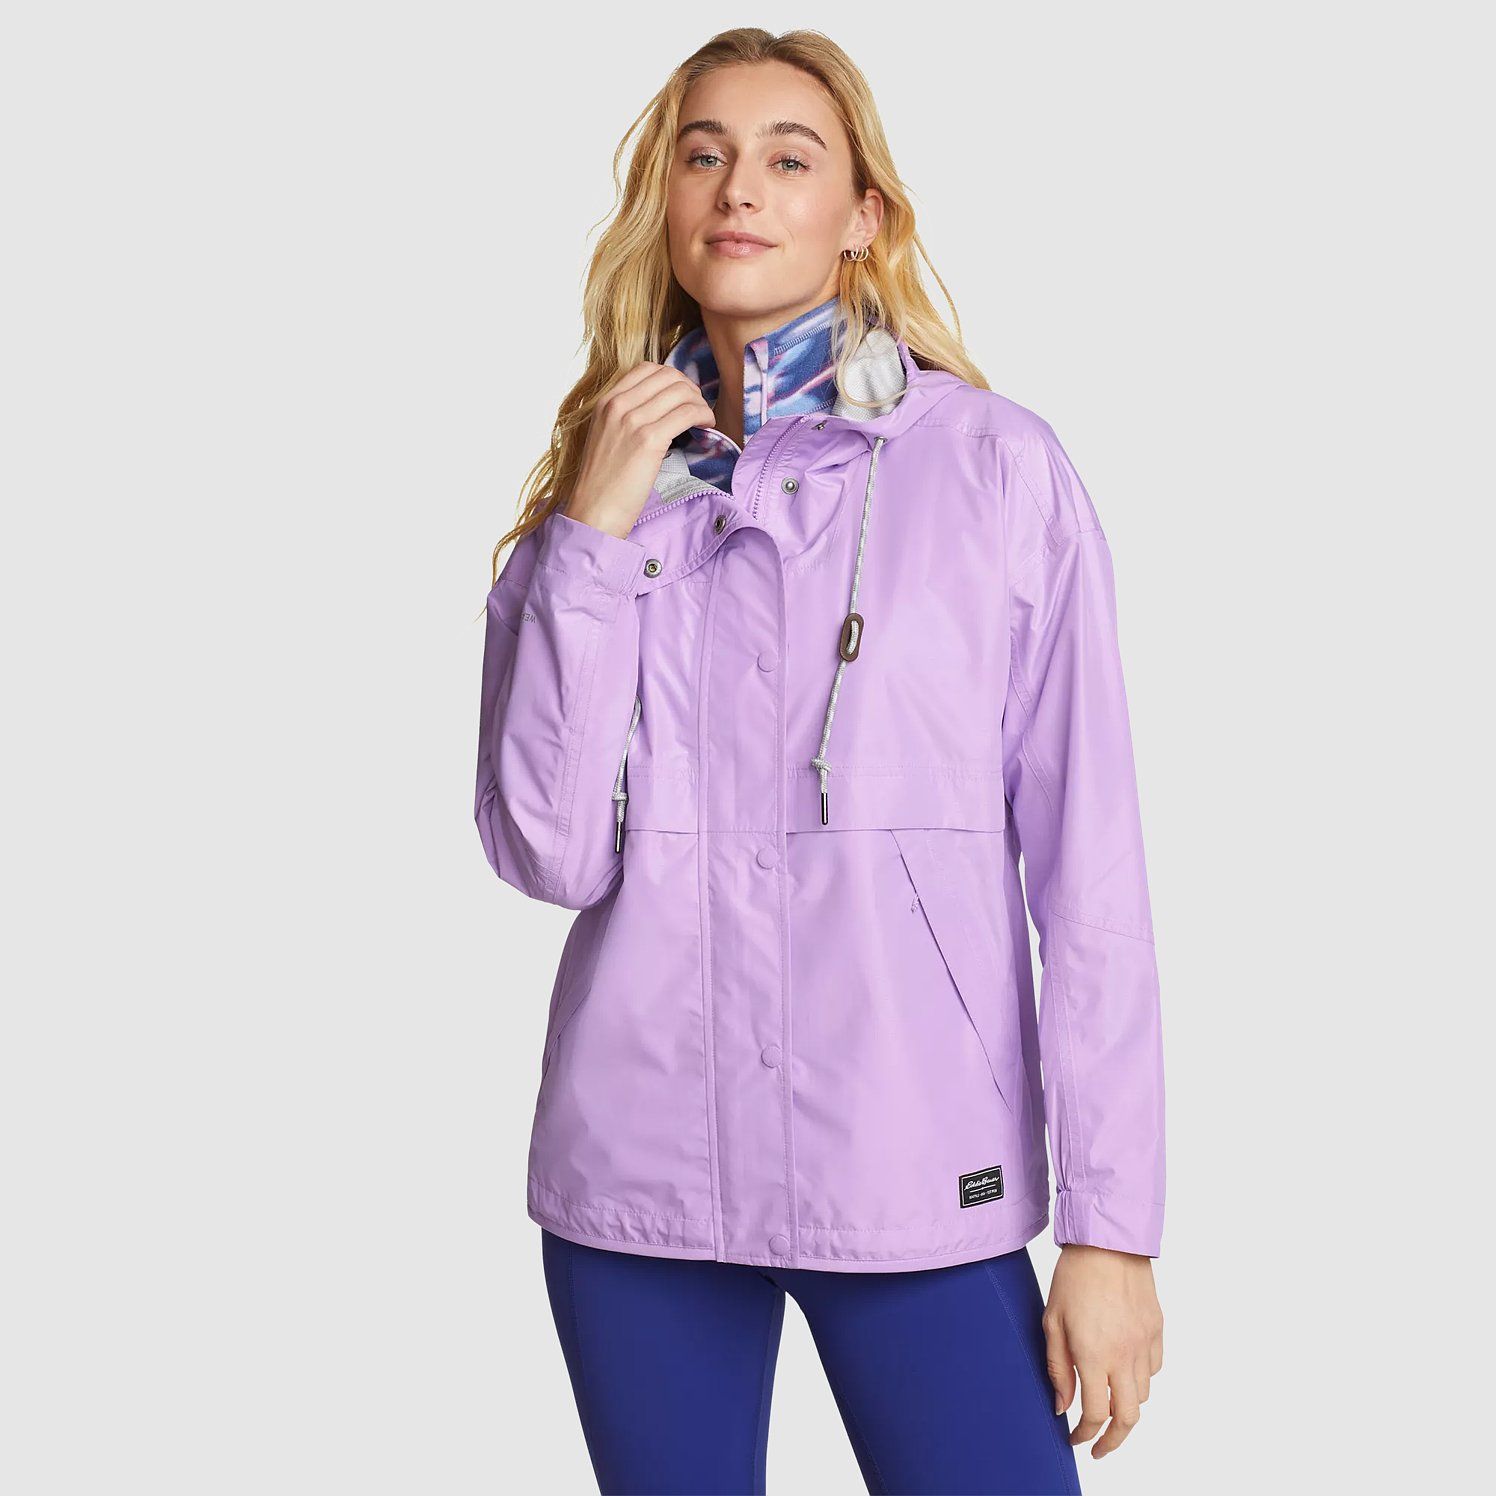 Women's RainPac Jacket | Eddie Bauer, LLC